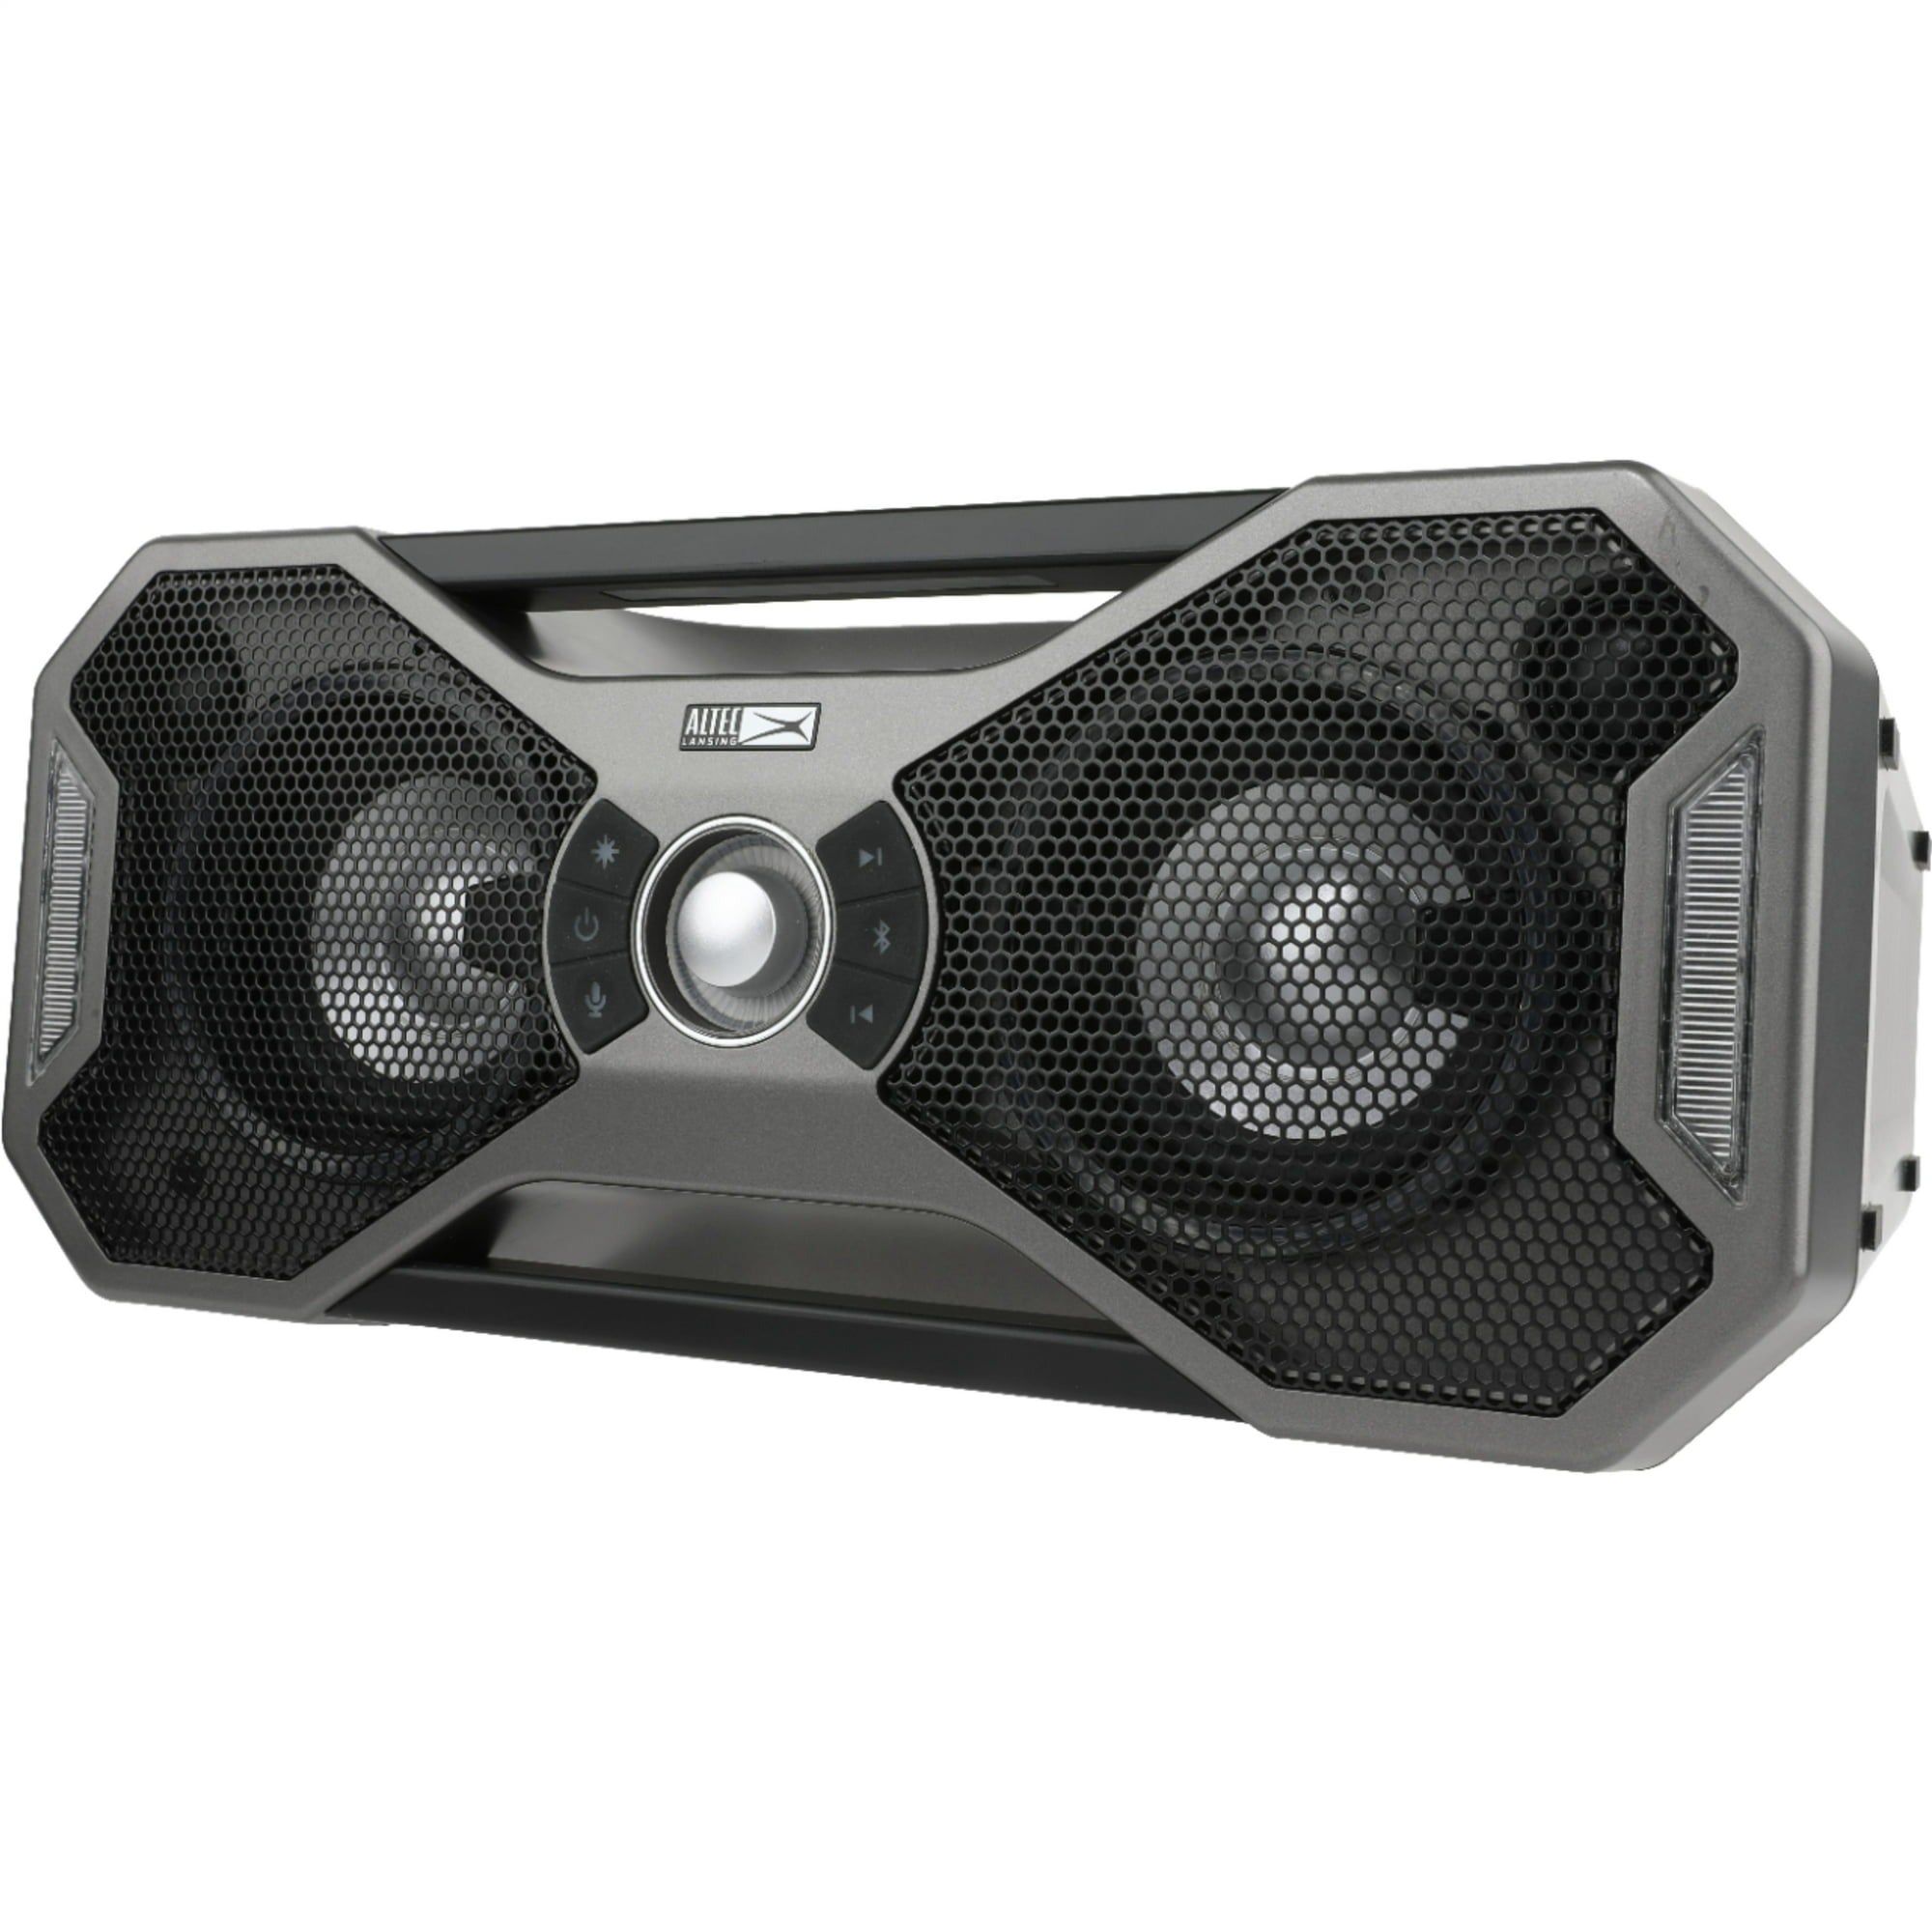 Altec Lansing IMW997-STL Mix 2.0 Bluetooth Speaker - Black (Certified Refurbished)